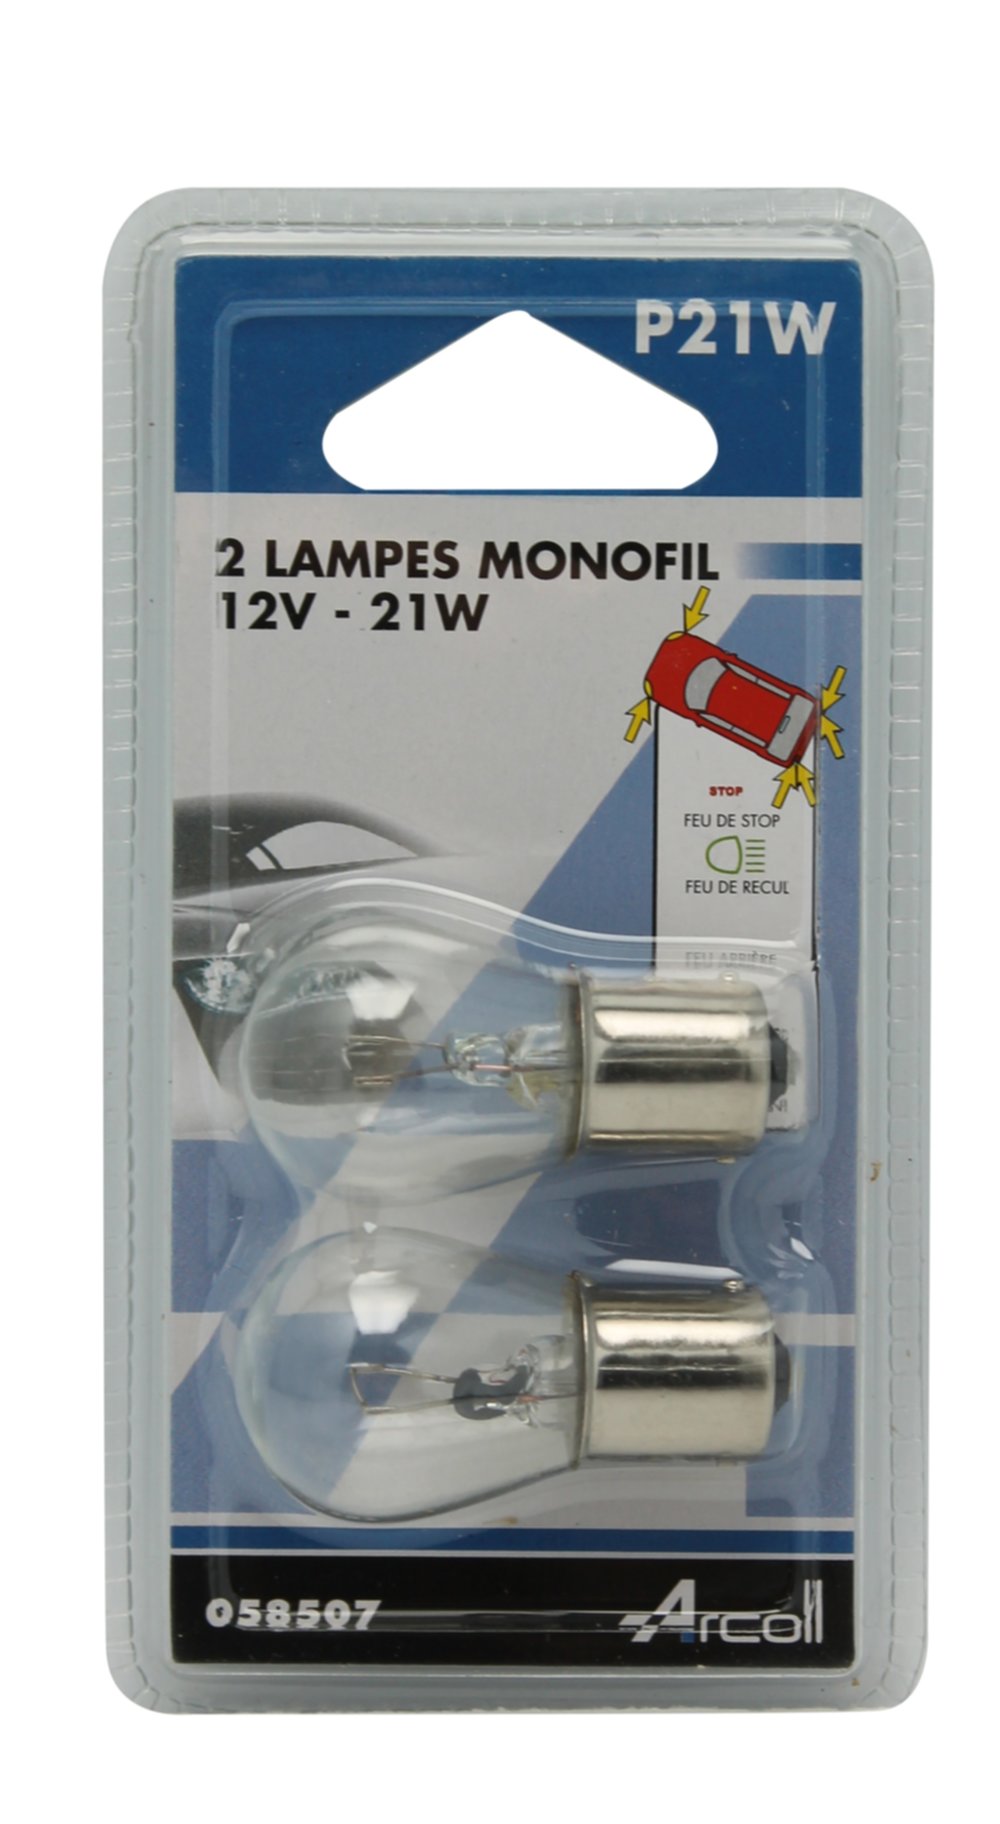 Lampe x2 monofil p21w